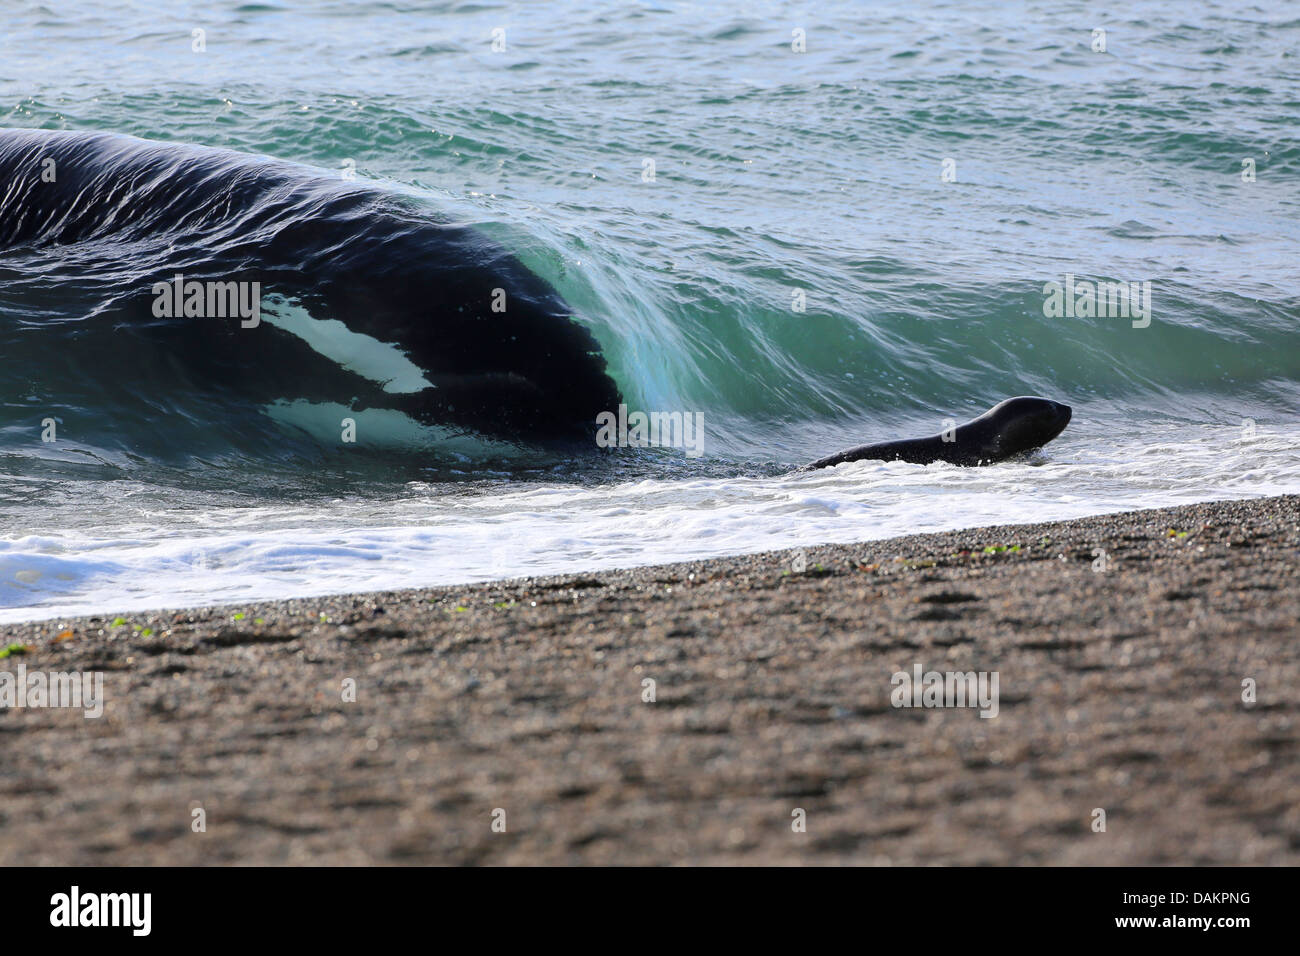 Orca, grand, de l'épaulard (Orcinus orca) grampus, attaquer un lion de mer du Sud, Argentine, Patagonie chiot, Valdes Banque D'Images